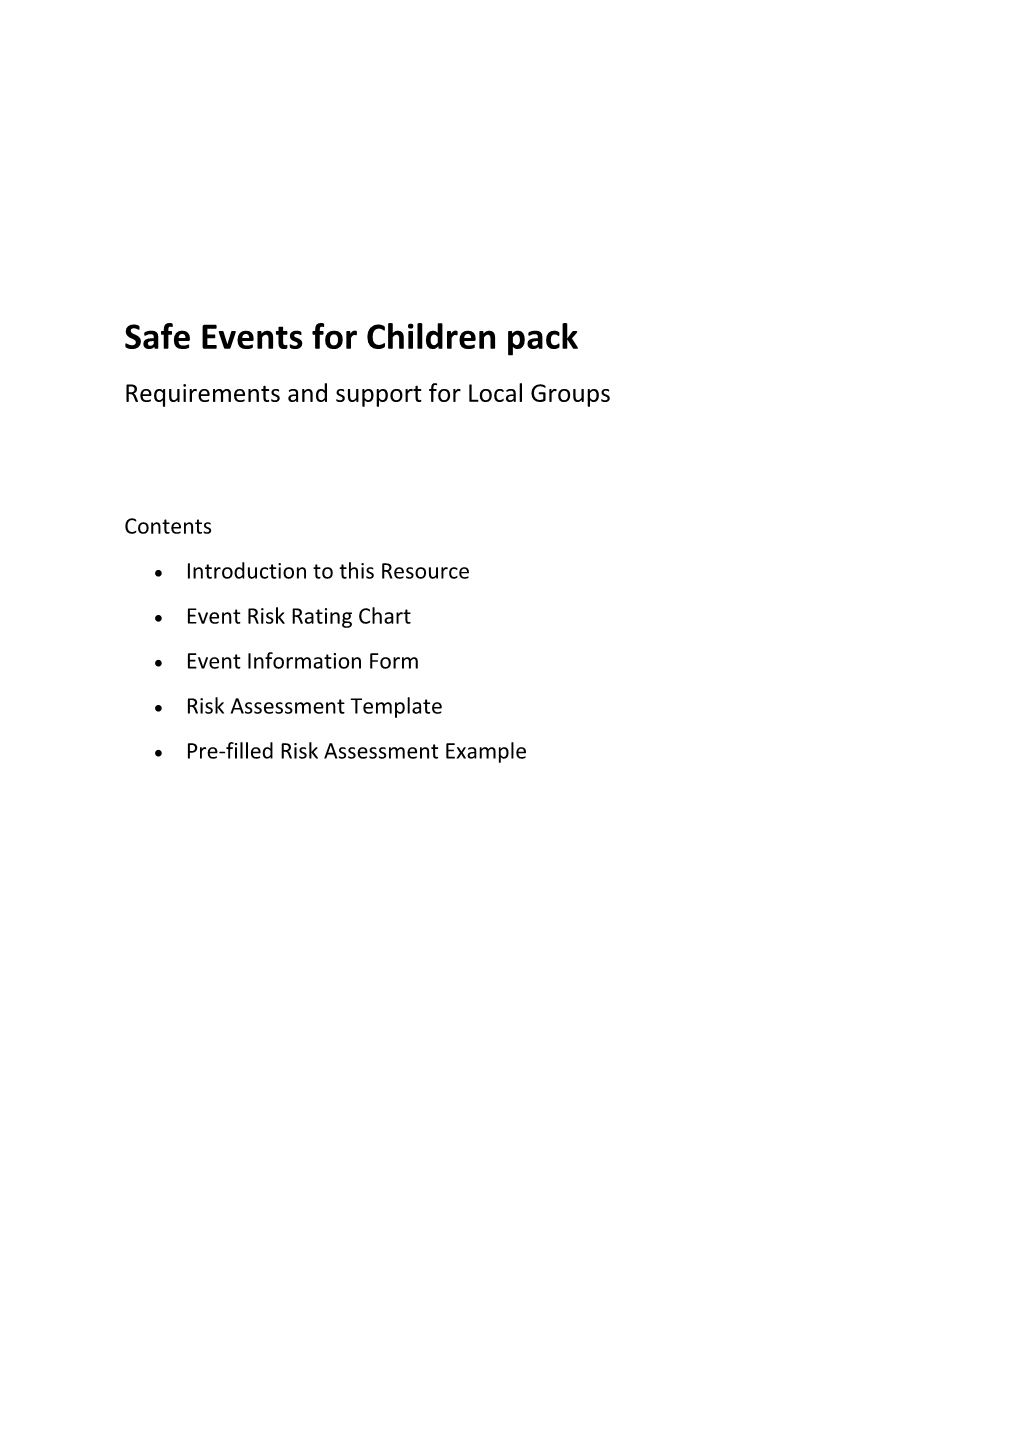 Safe Eventsfor Children Pack